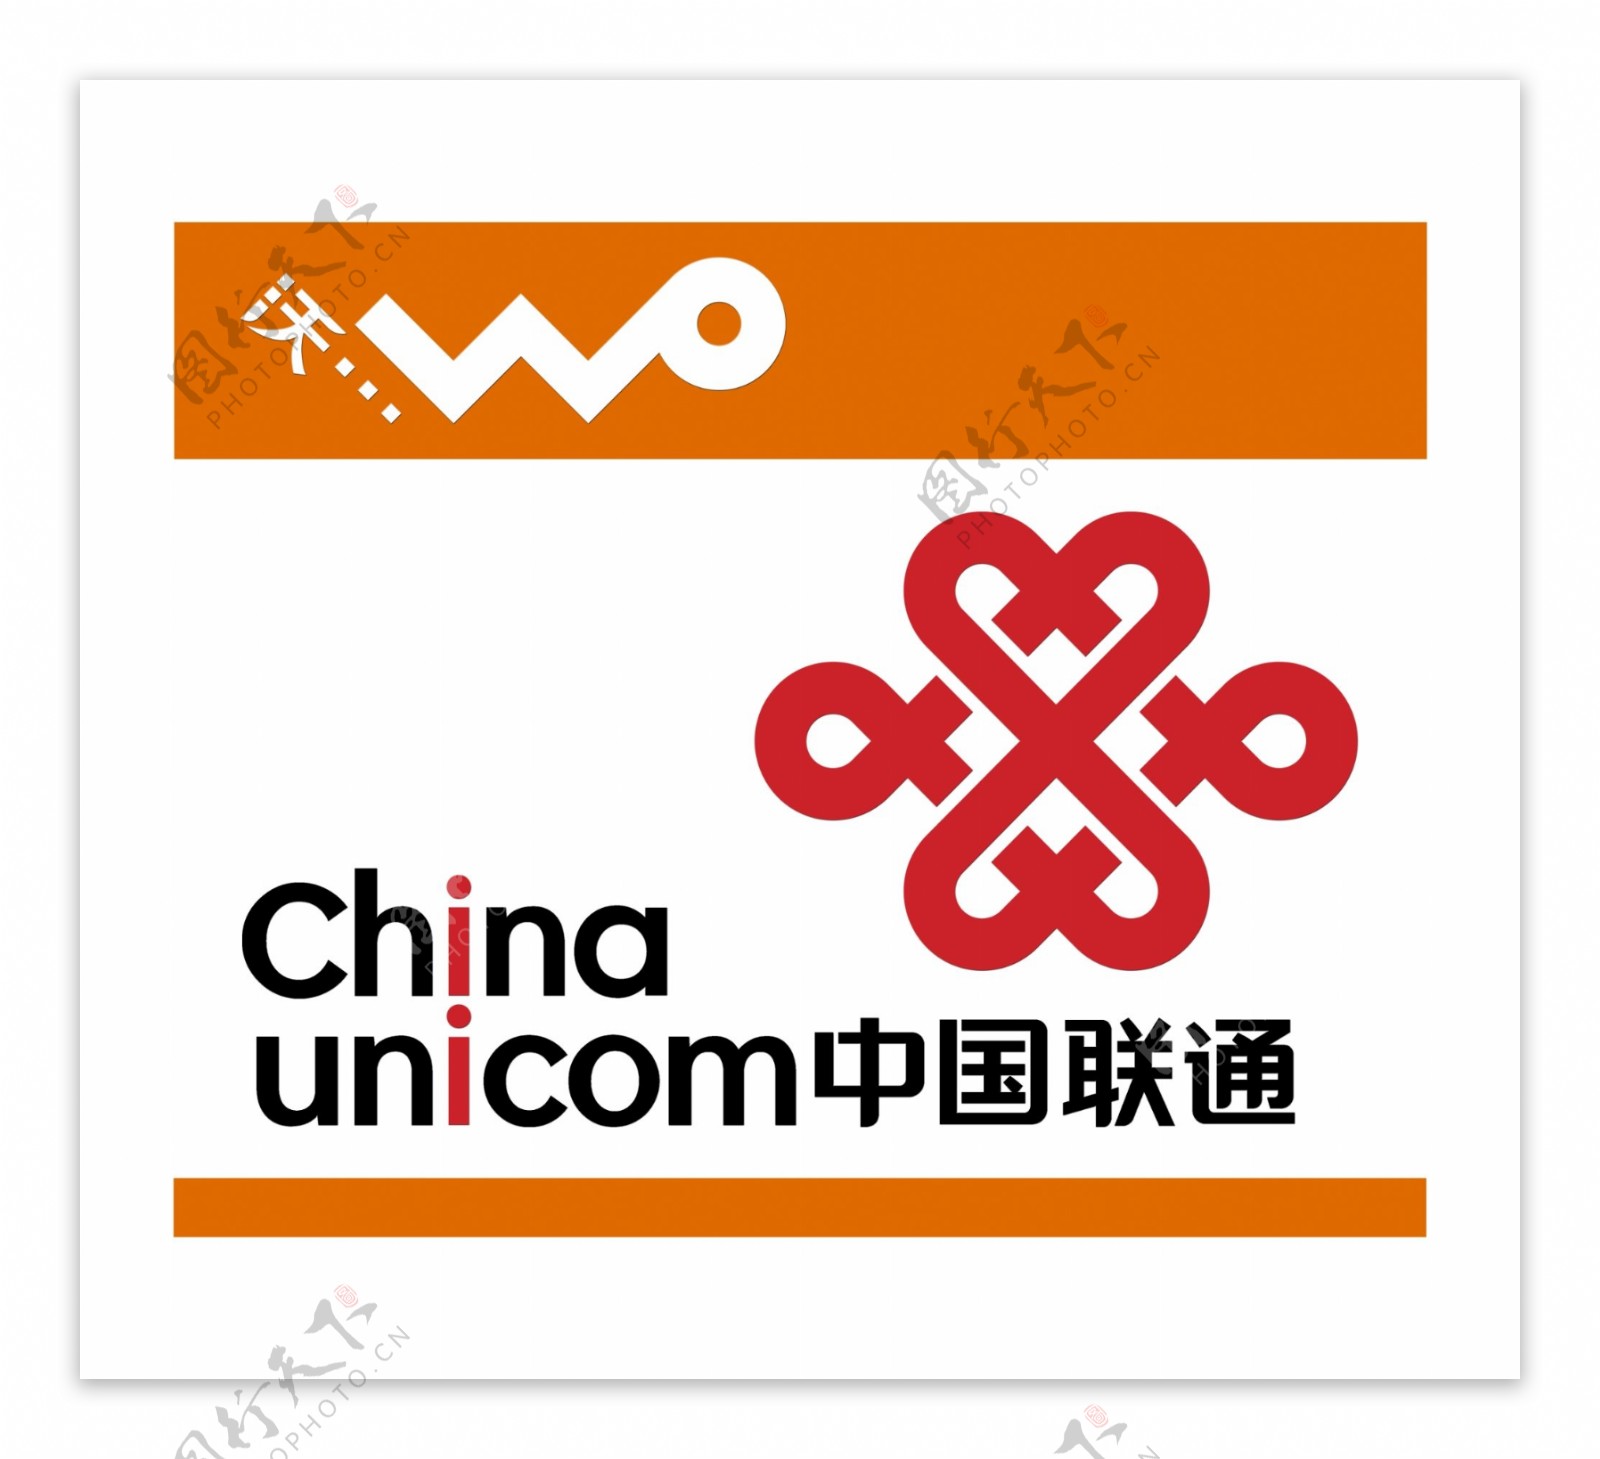 中国联通标志中国联通logo